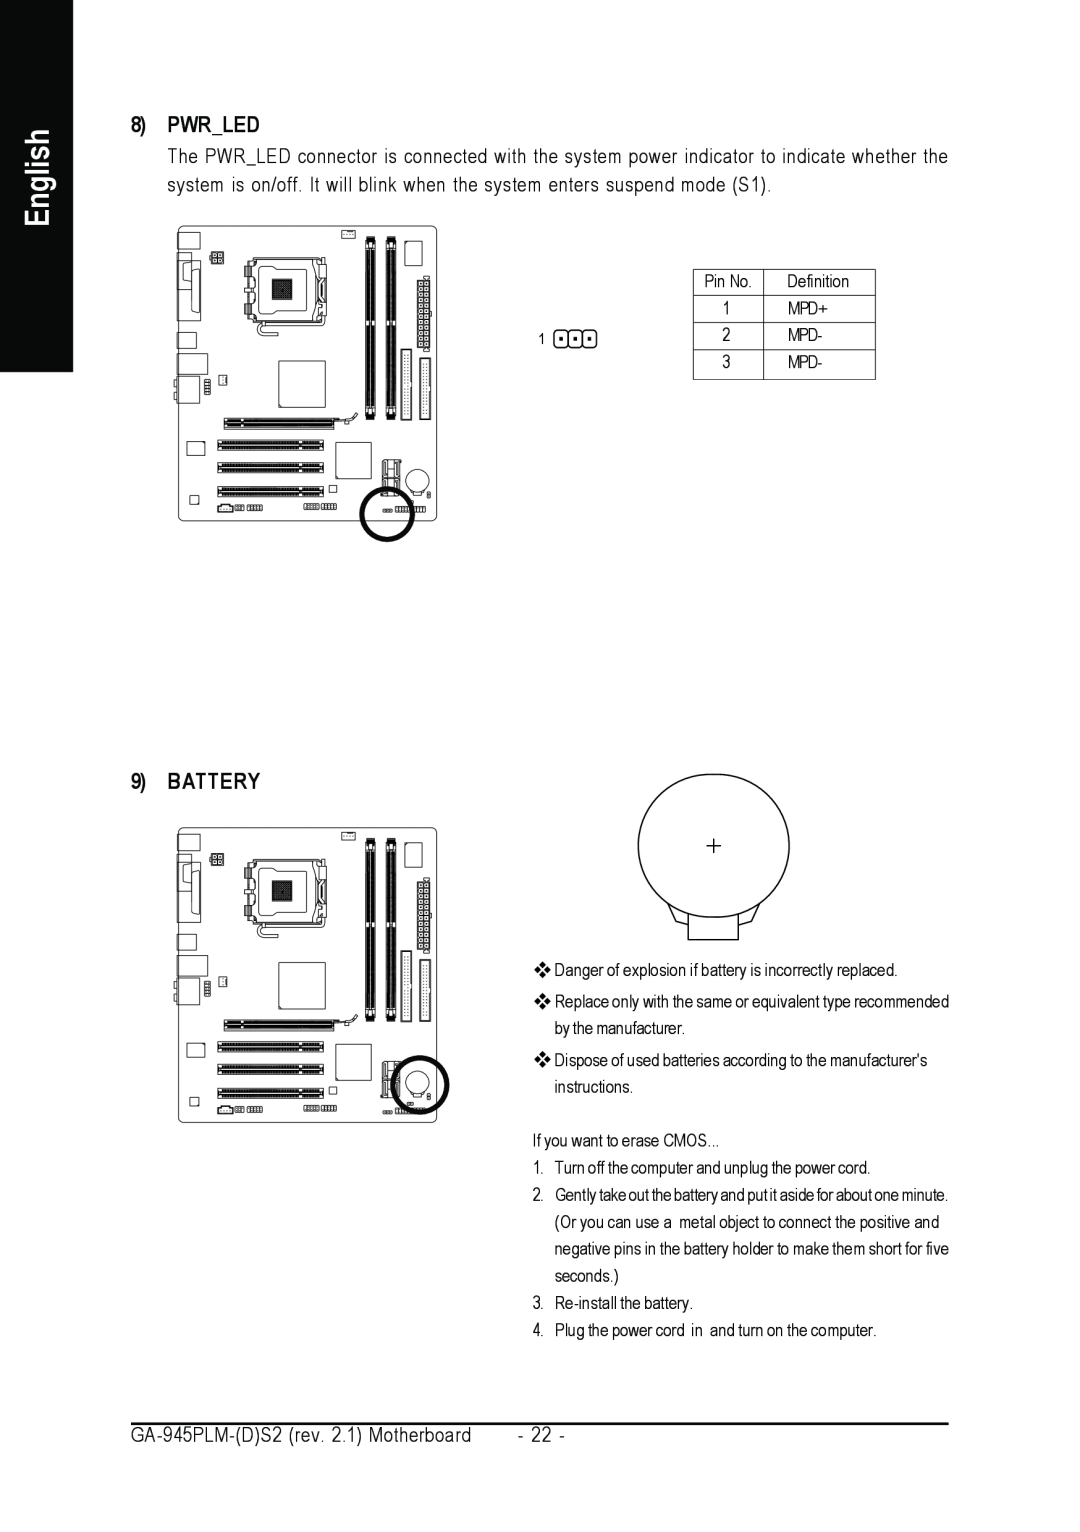 Gigabyte GA-945PLM-(D)S2 user manual Pwrled, Battery, English 